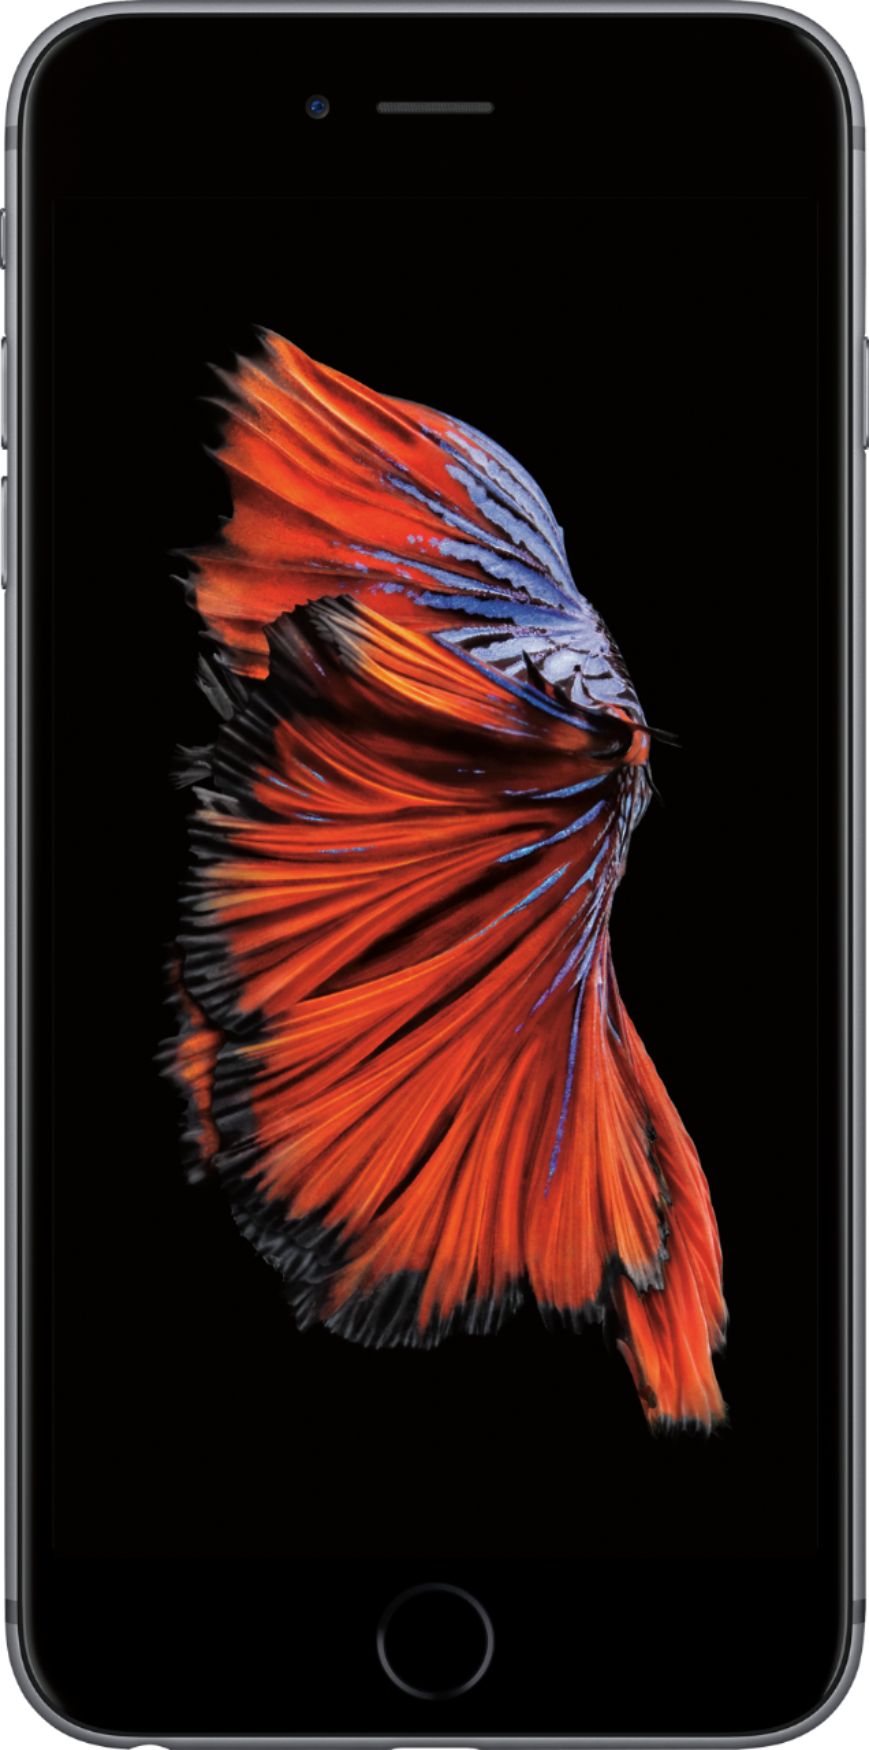 tweede favoriete Omgeving Best Buy: Apple iPhone 6s Plus 32GB Space Gray (Sprint) MN342LL/A